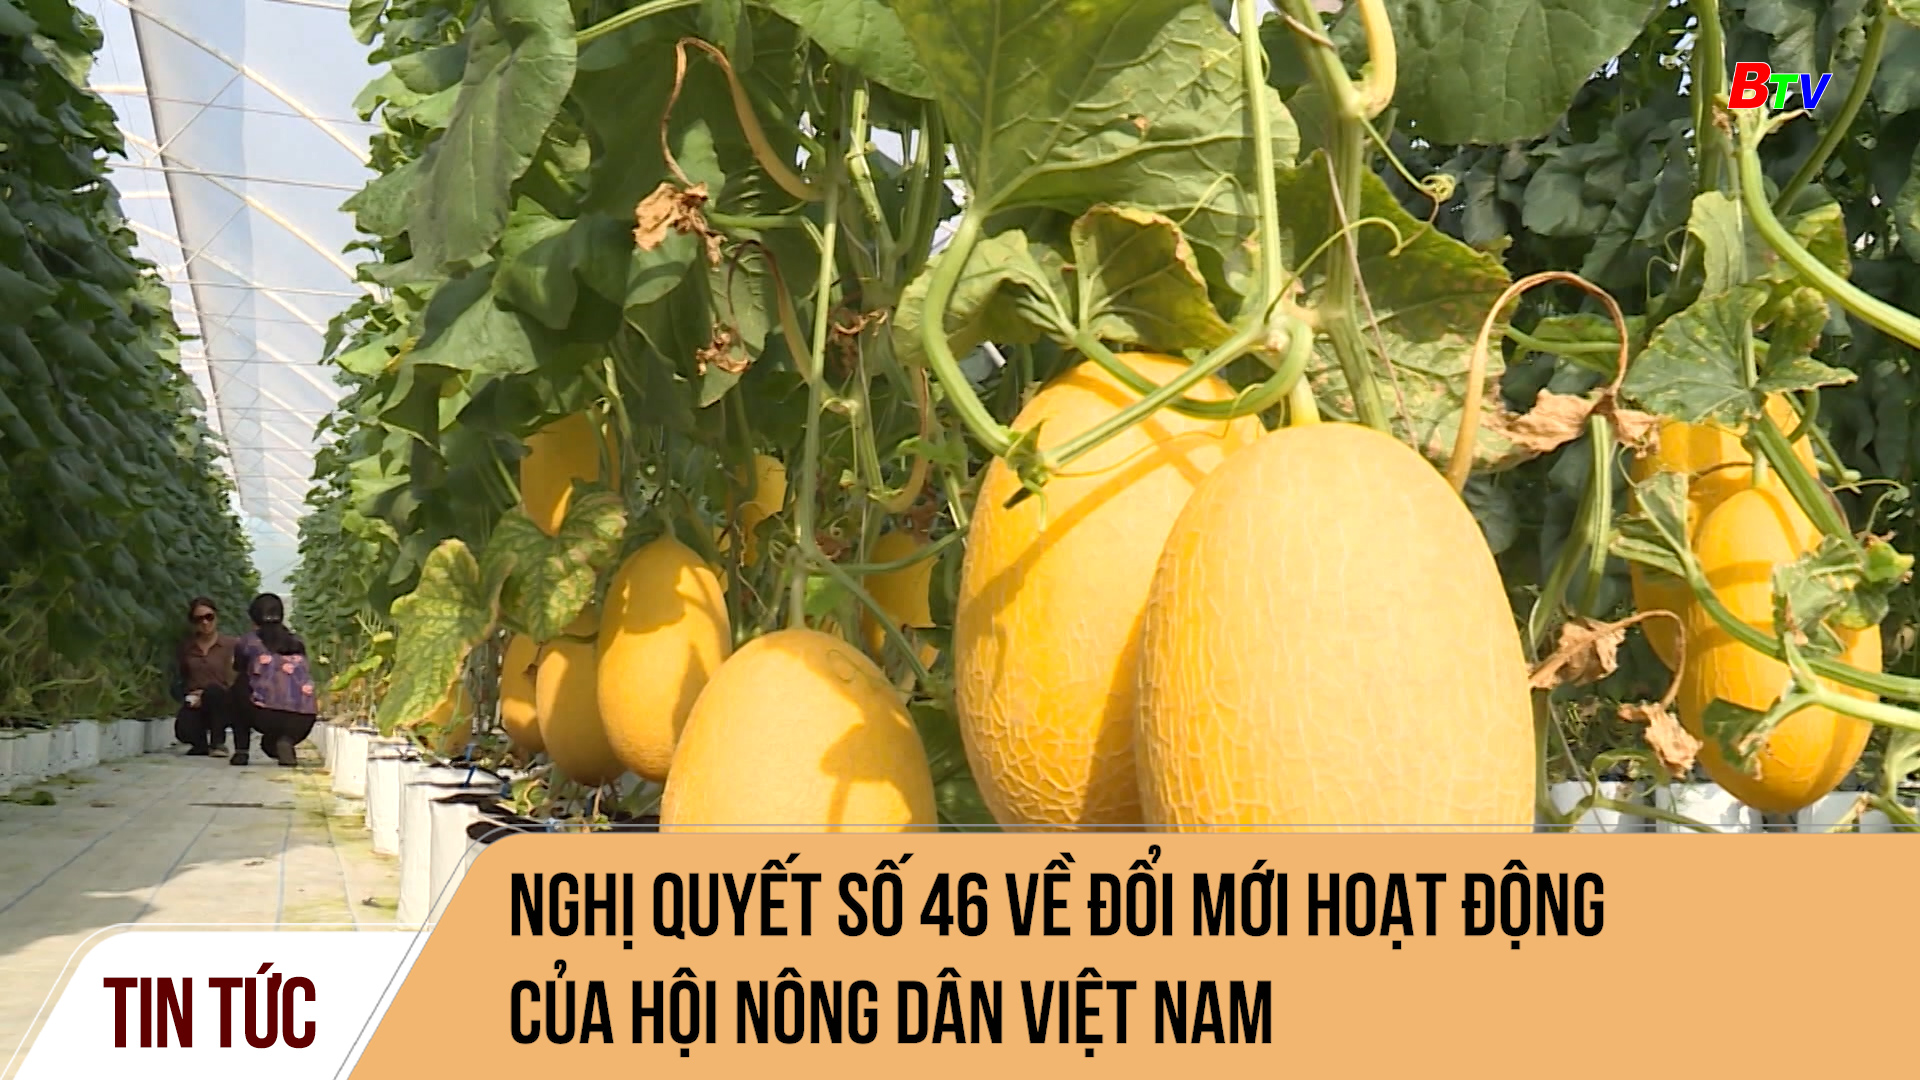 Nghị quyết số 46 về đổi mới hoạt động của Hội nông dân Việt Nam